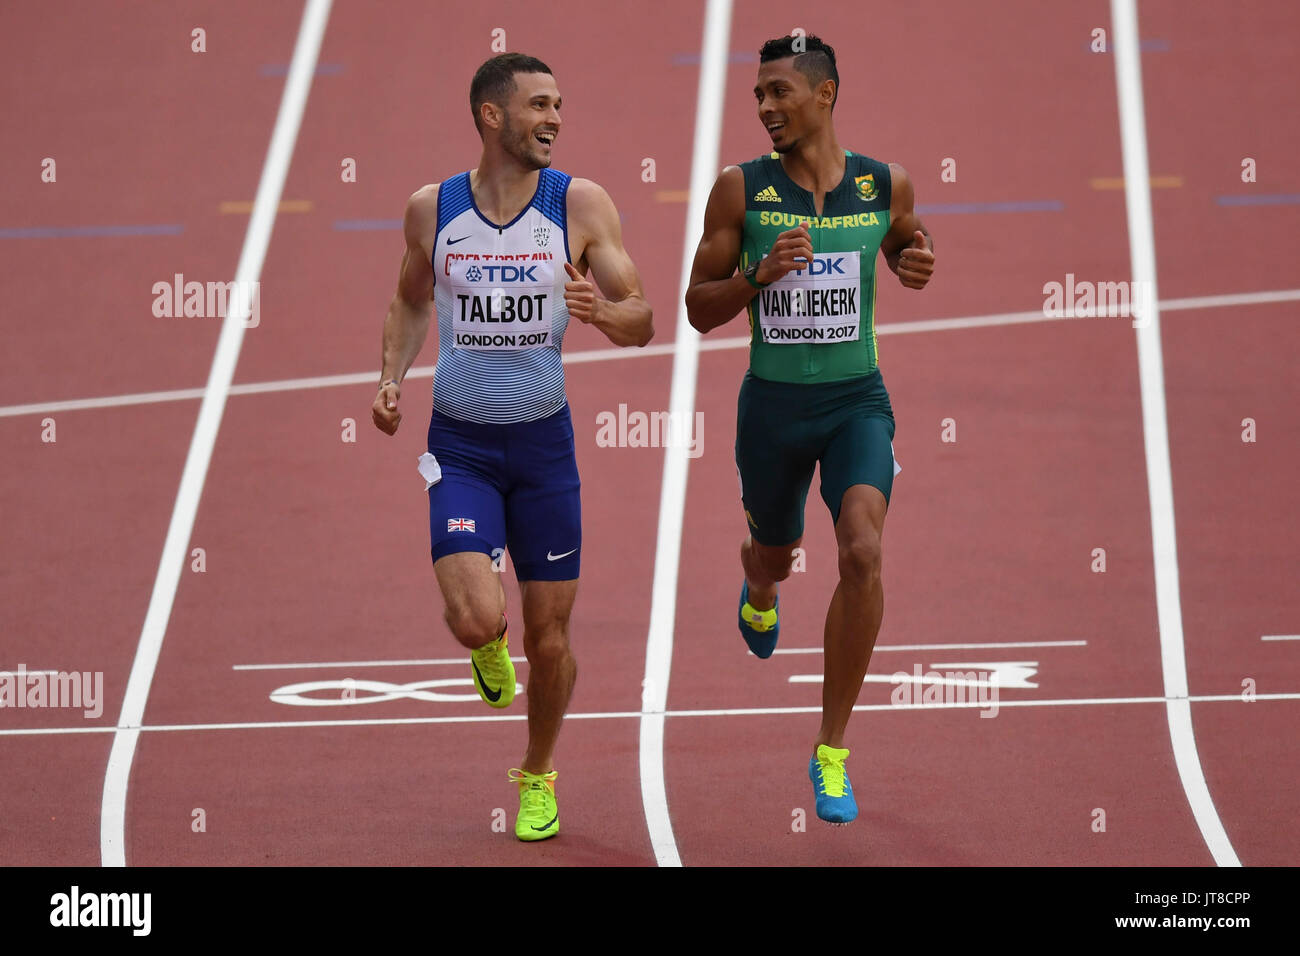 Londres, Royaume-Uni. 7 août 2017. (L) Danny Talbot (GB) et Wayde Van Niekerk (Afrique du Sud) de traverser la ligne d'arrivée ensemble de leur 200m de chaleur au stade de Londres, au quatrième jour de l'IAAF World Championships London 2017. Crédit : Stephen Chung / Alamy Live News Banque D'Images